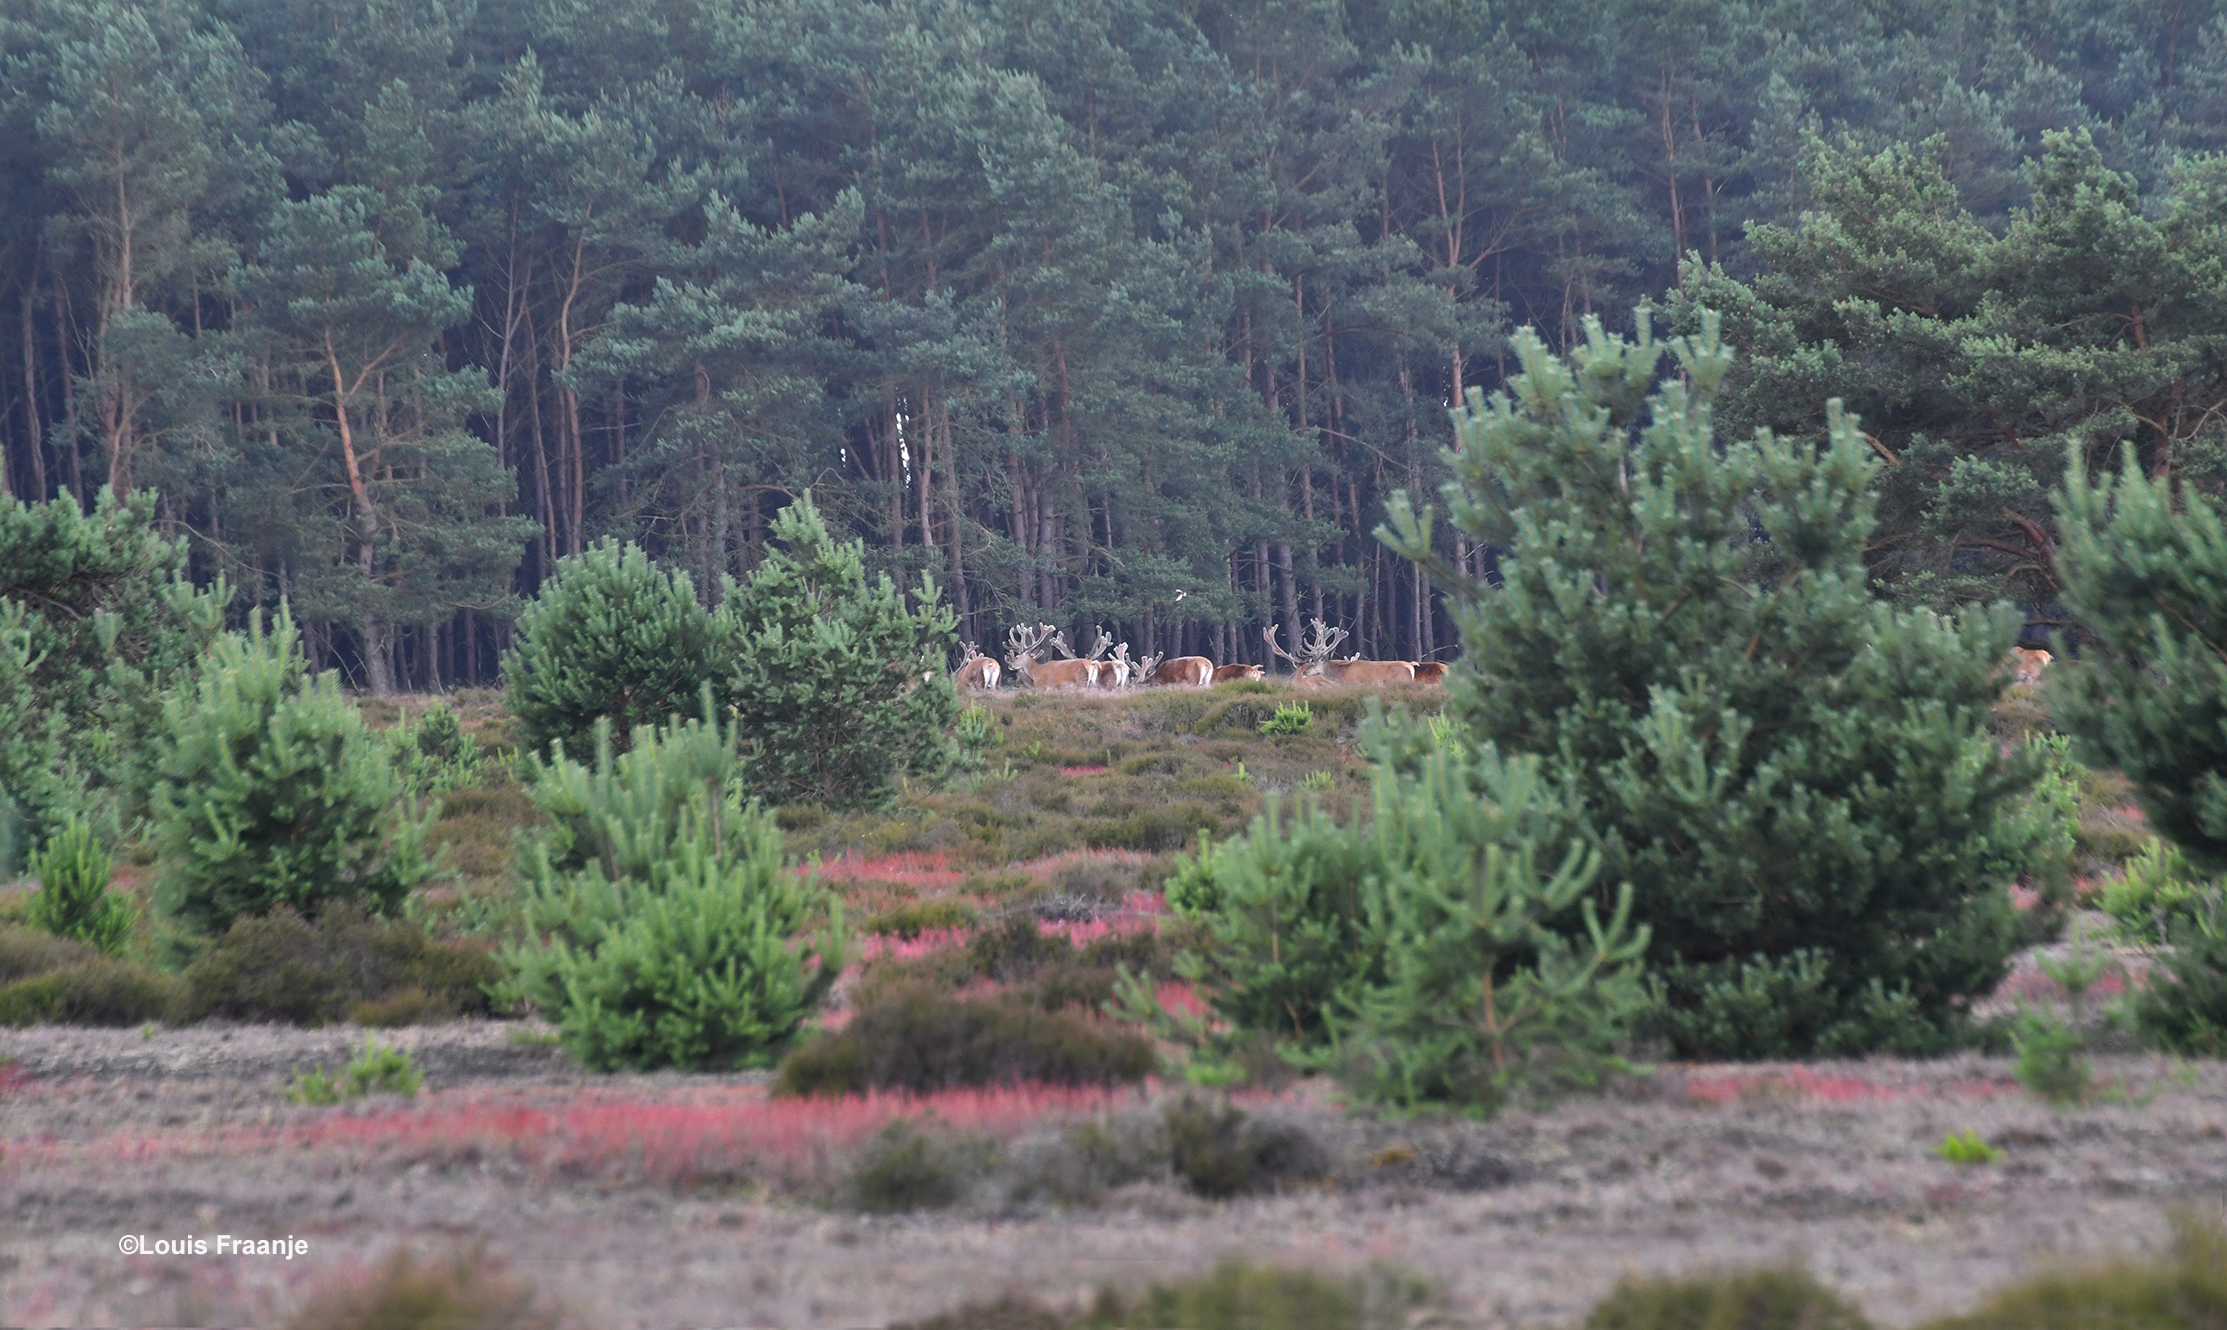 De andere edelherten trekken het bos in - Foto: ©Louis Fraanje